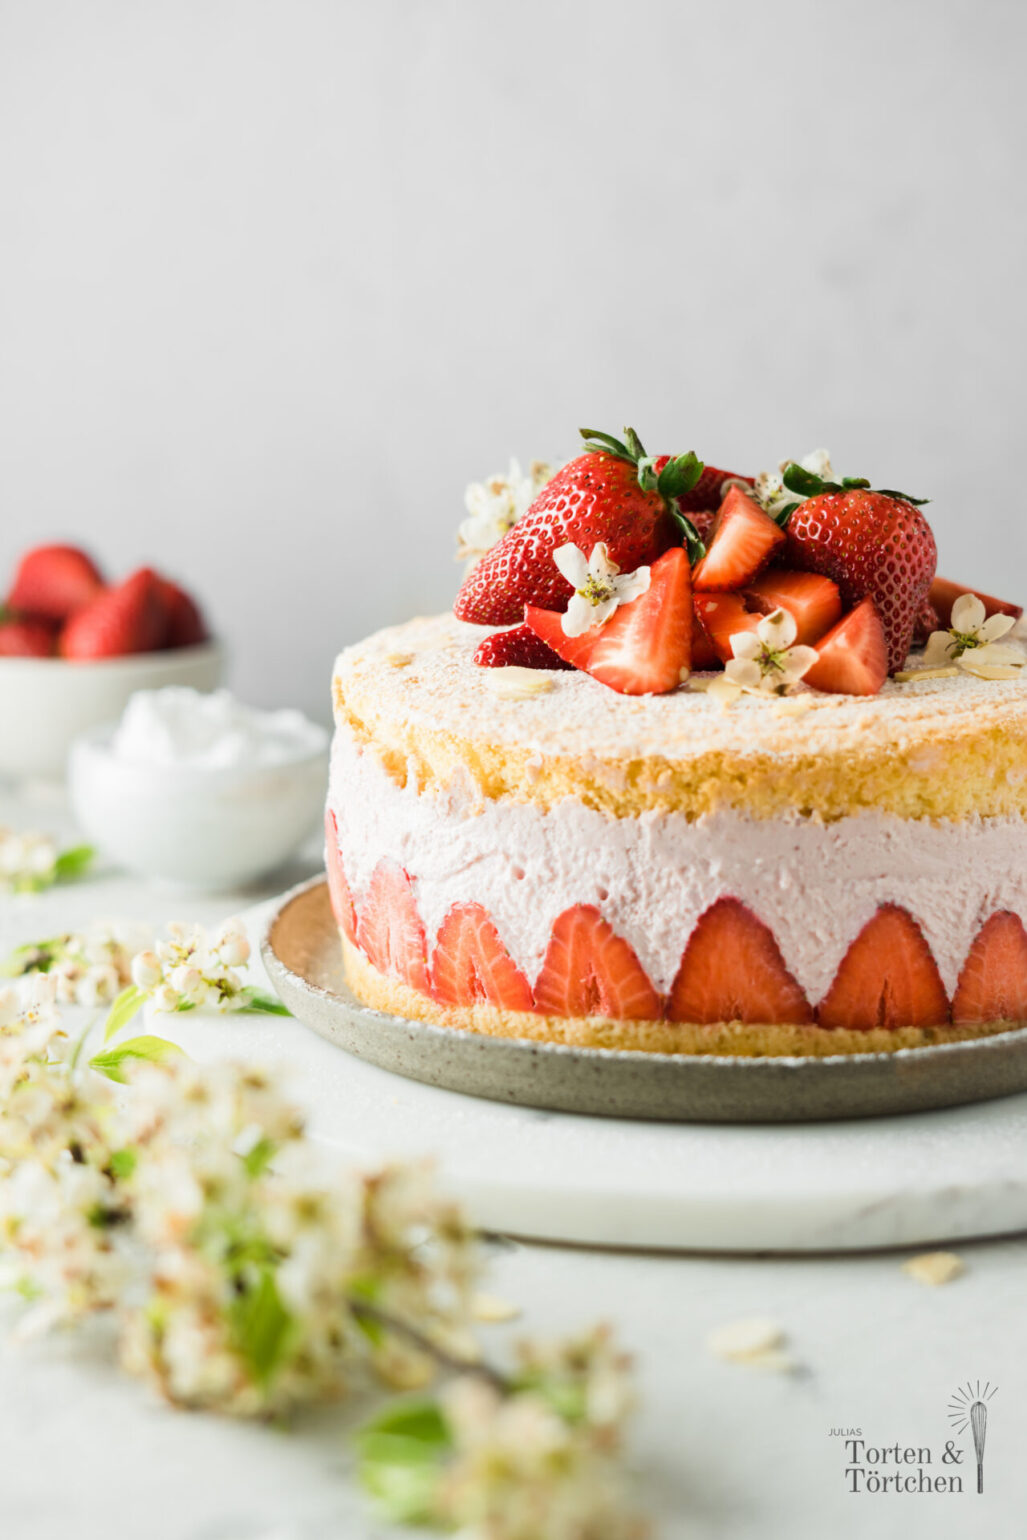 Einfaches Rezept für eine fruchtige Käse Sahne Torte mit frischen Erdbeeren. Diese kleine Käse Sahne Torte ist super leicht gemacht und schmeckt super fruchtig nach Erdbeeren! #Erdbeeren #Erdbeertorte #KäseSahne #Torte #Saisonal #Käsekuchen #Biskuit